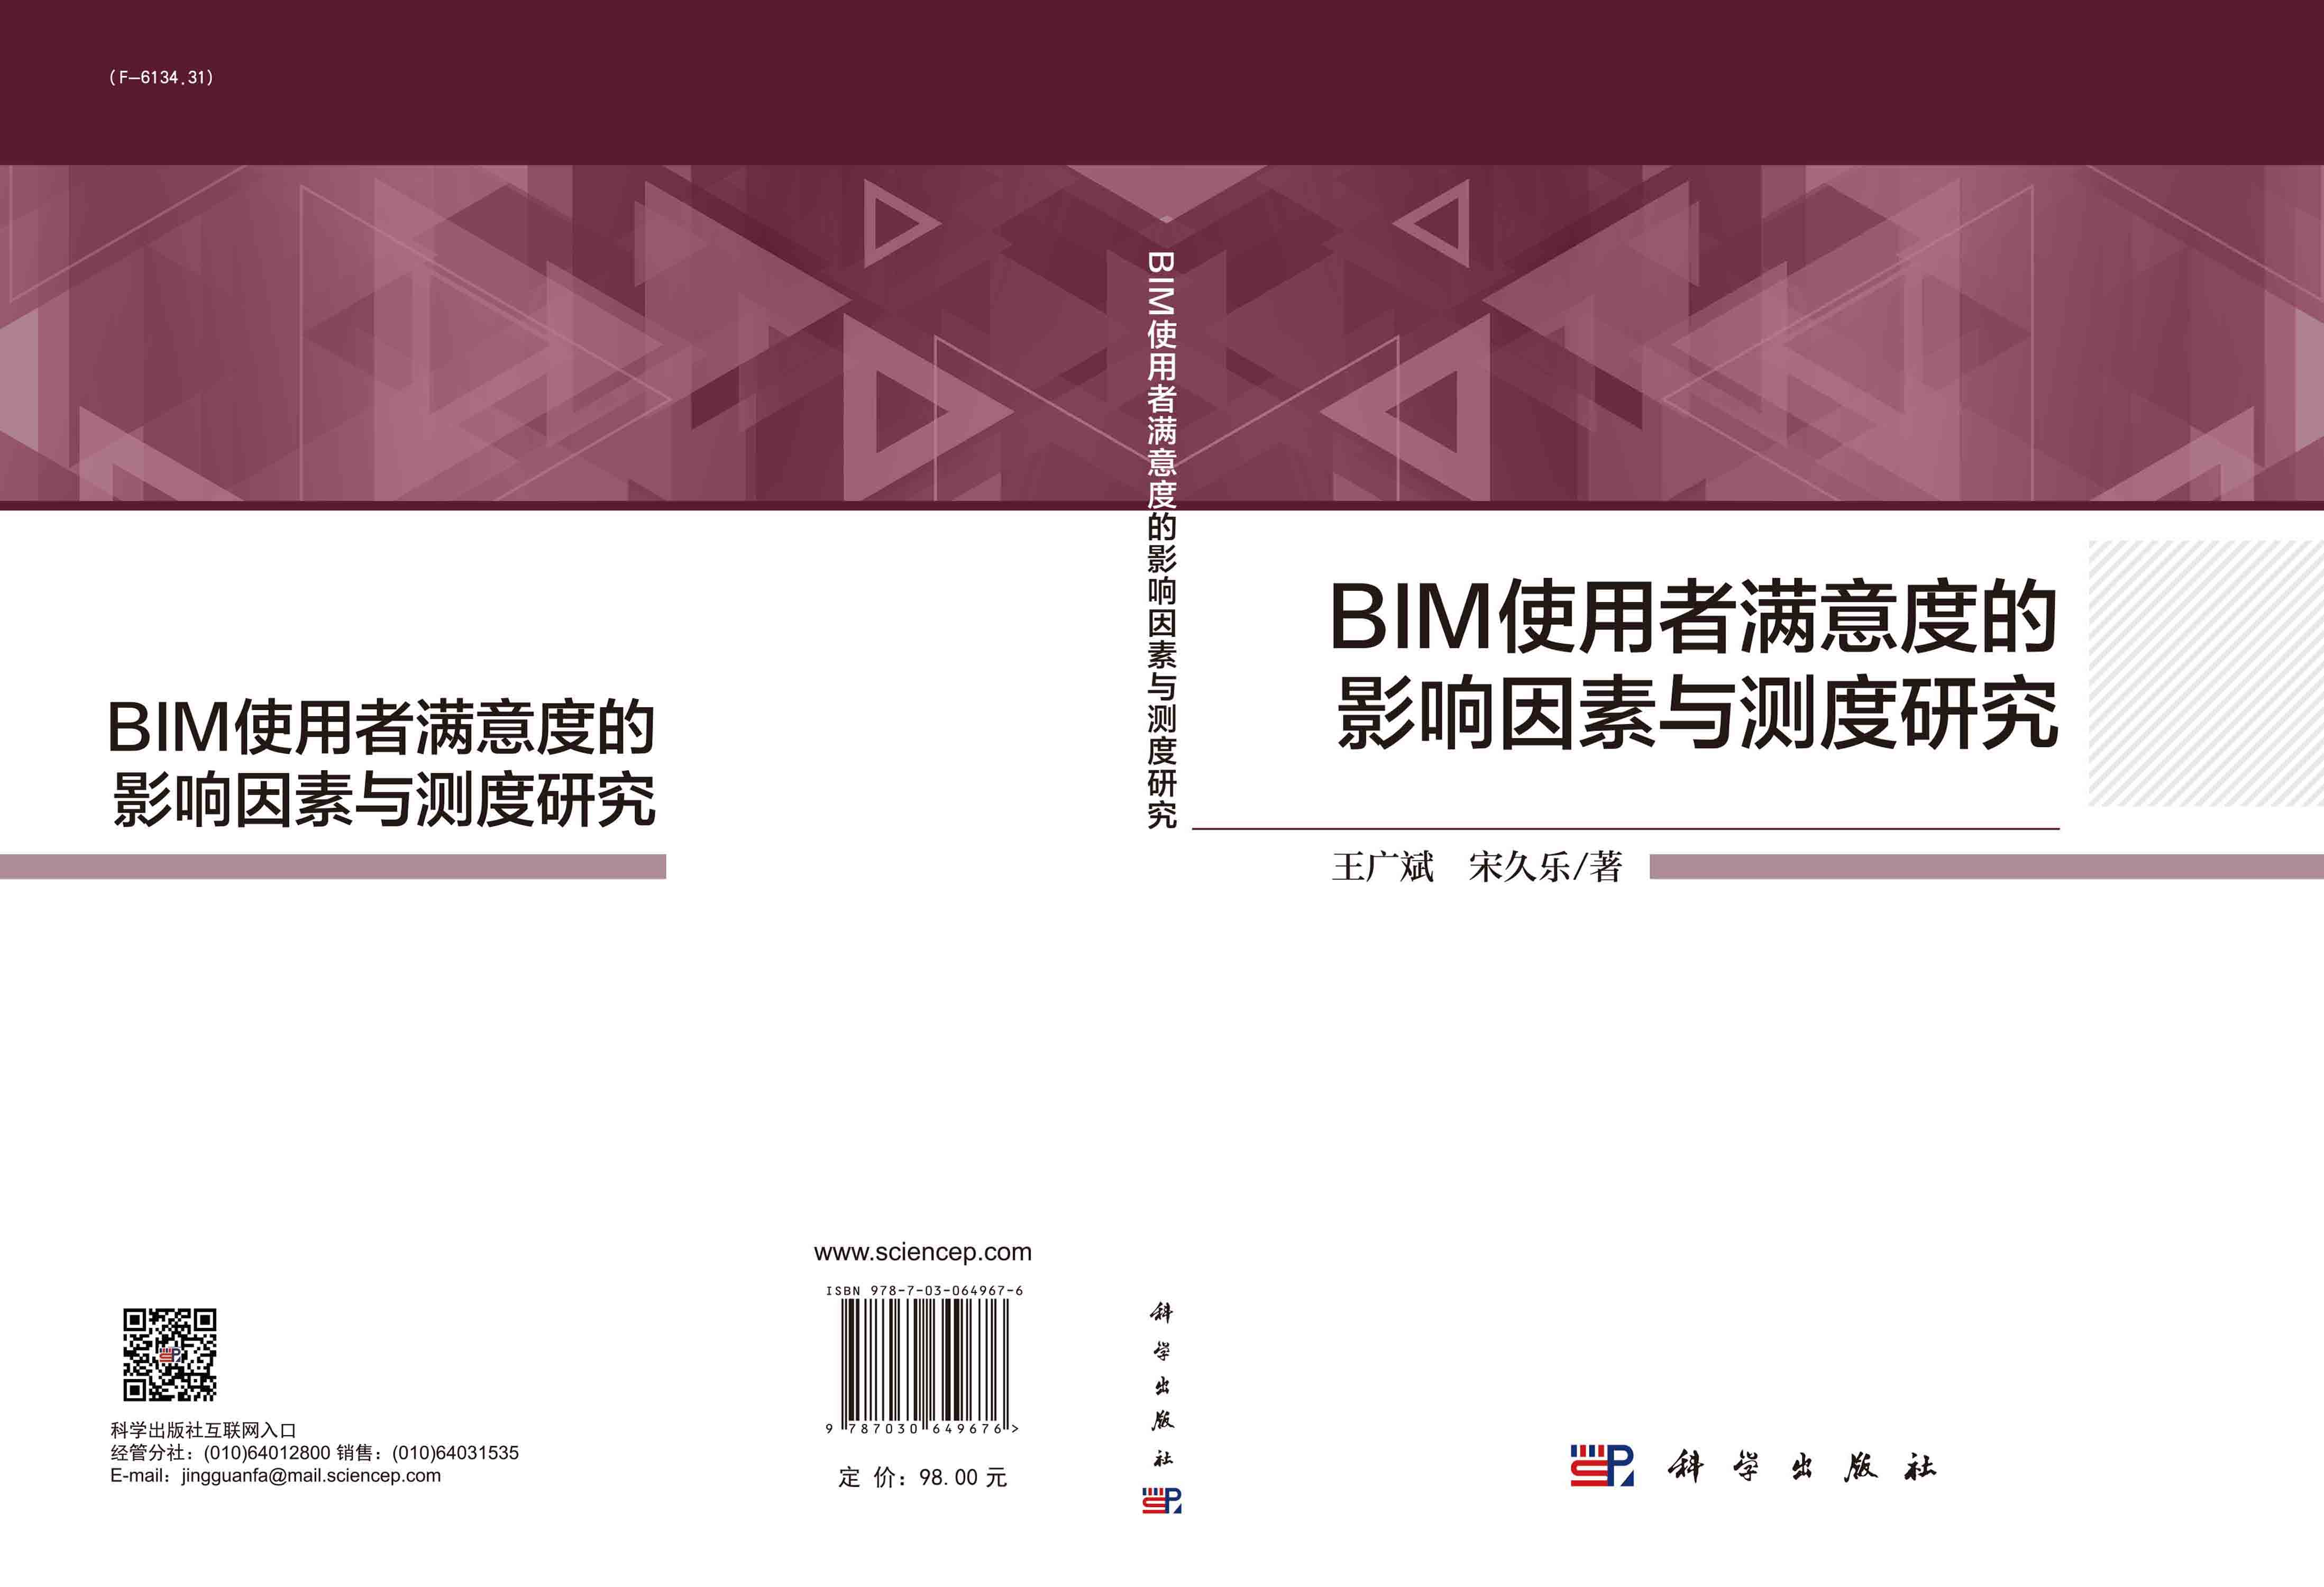 BIM使用者满意度的影响因素与测度研究